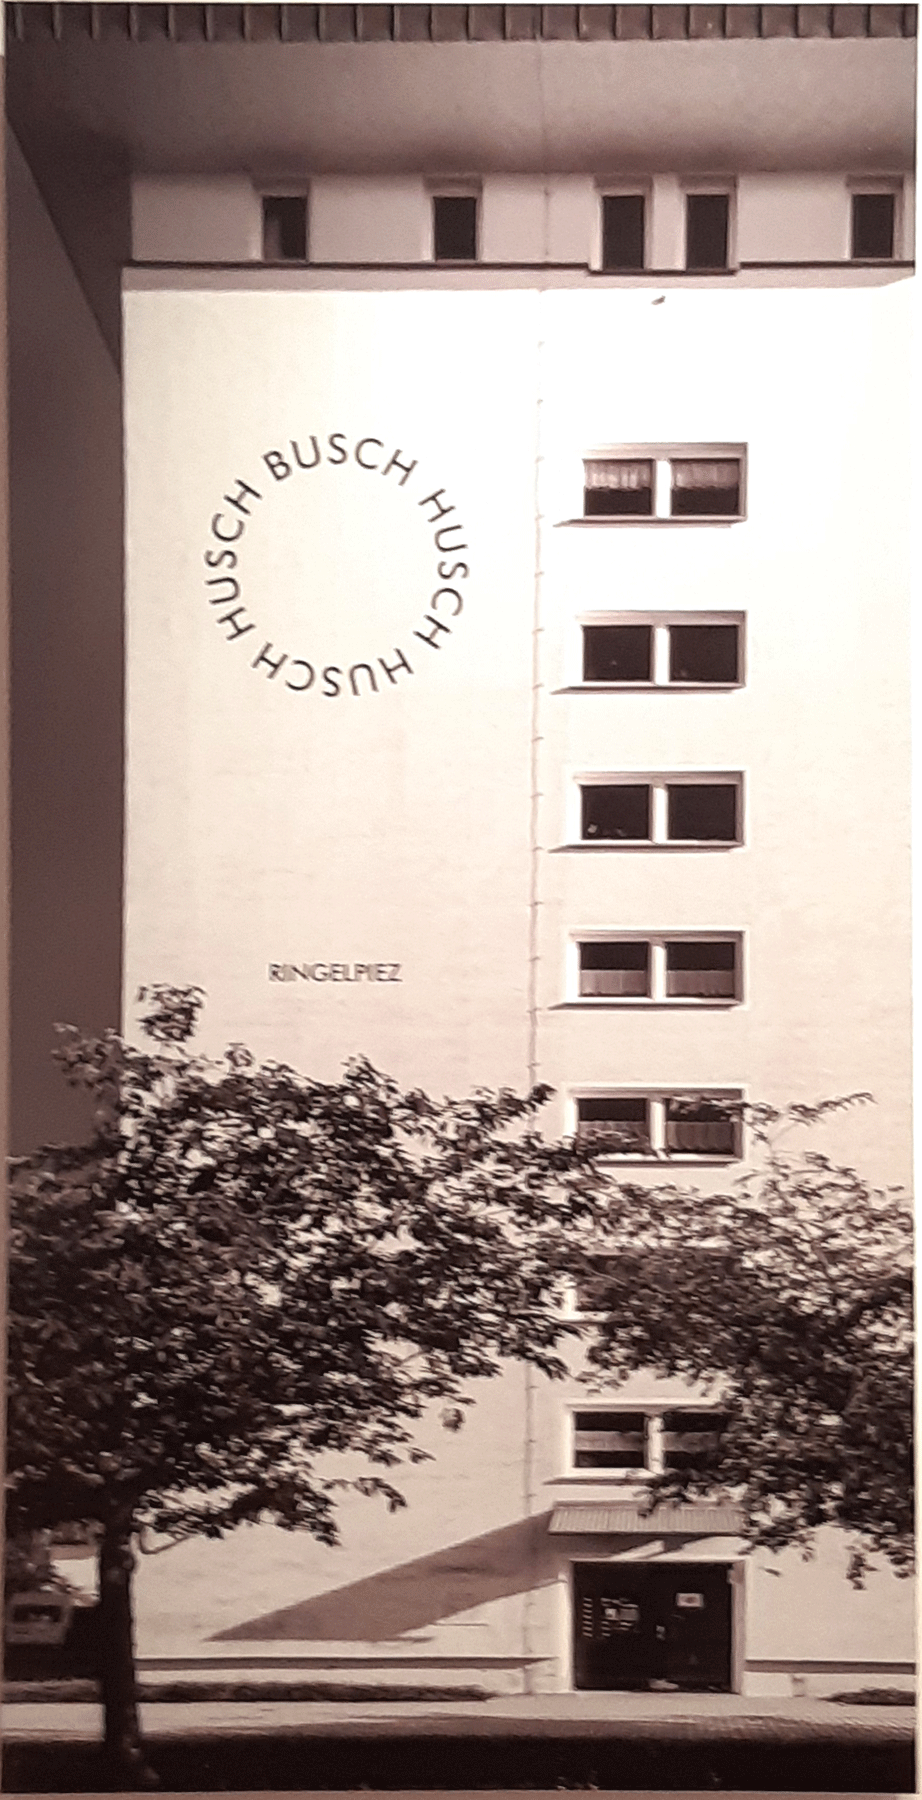 Busch Husch - Ringelpiez